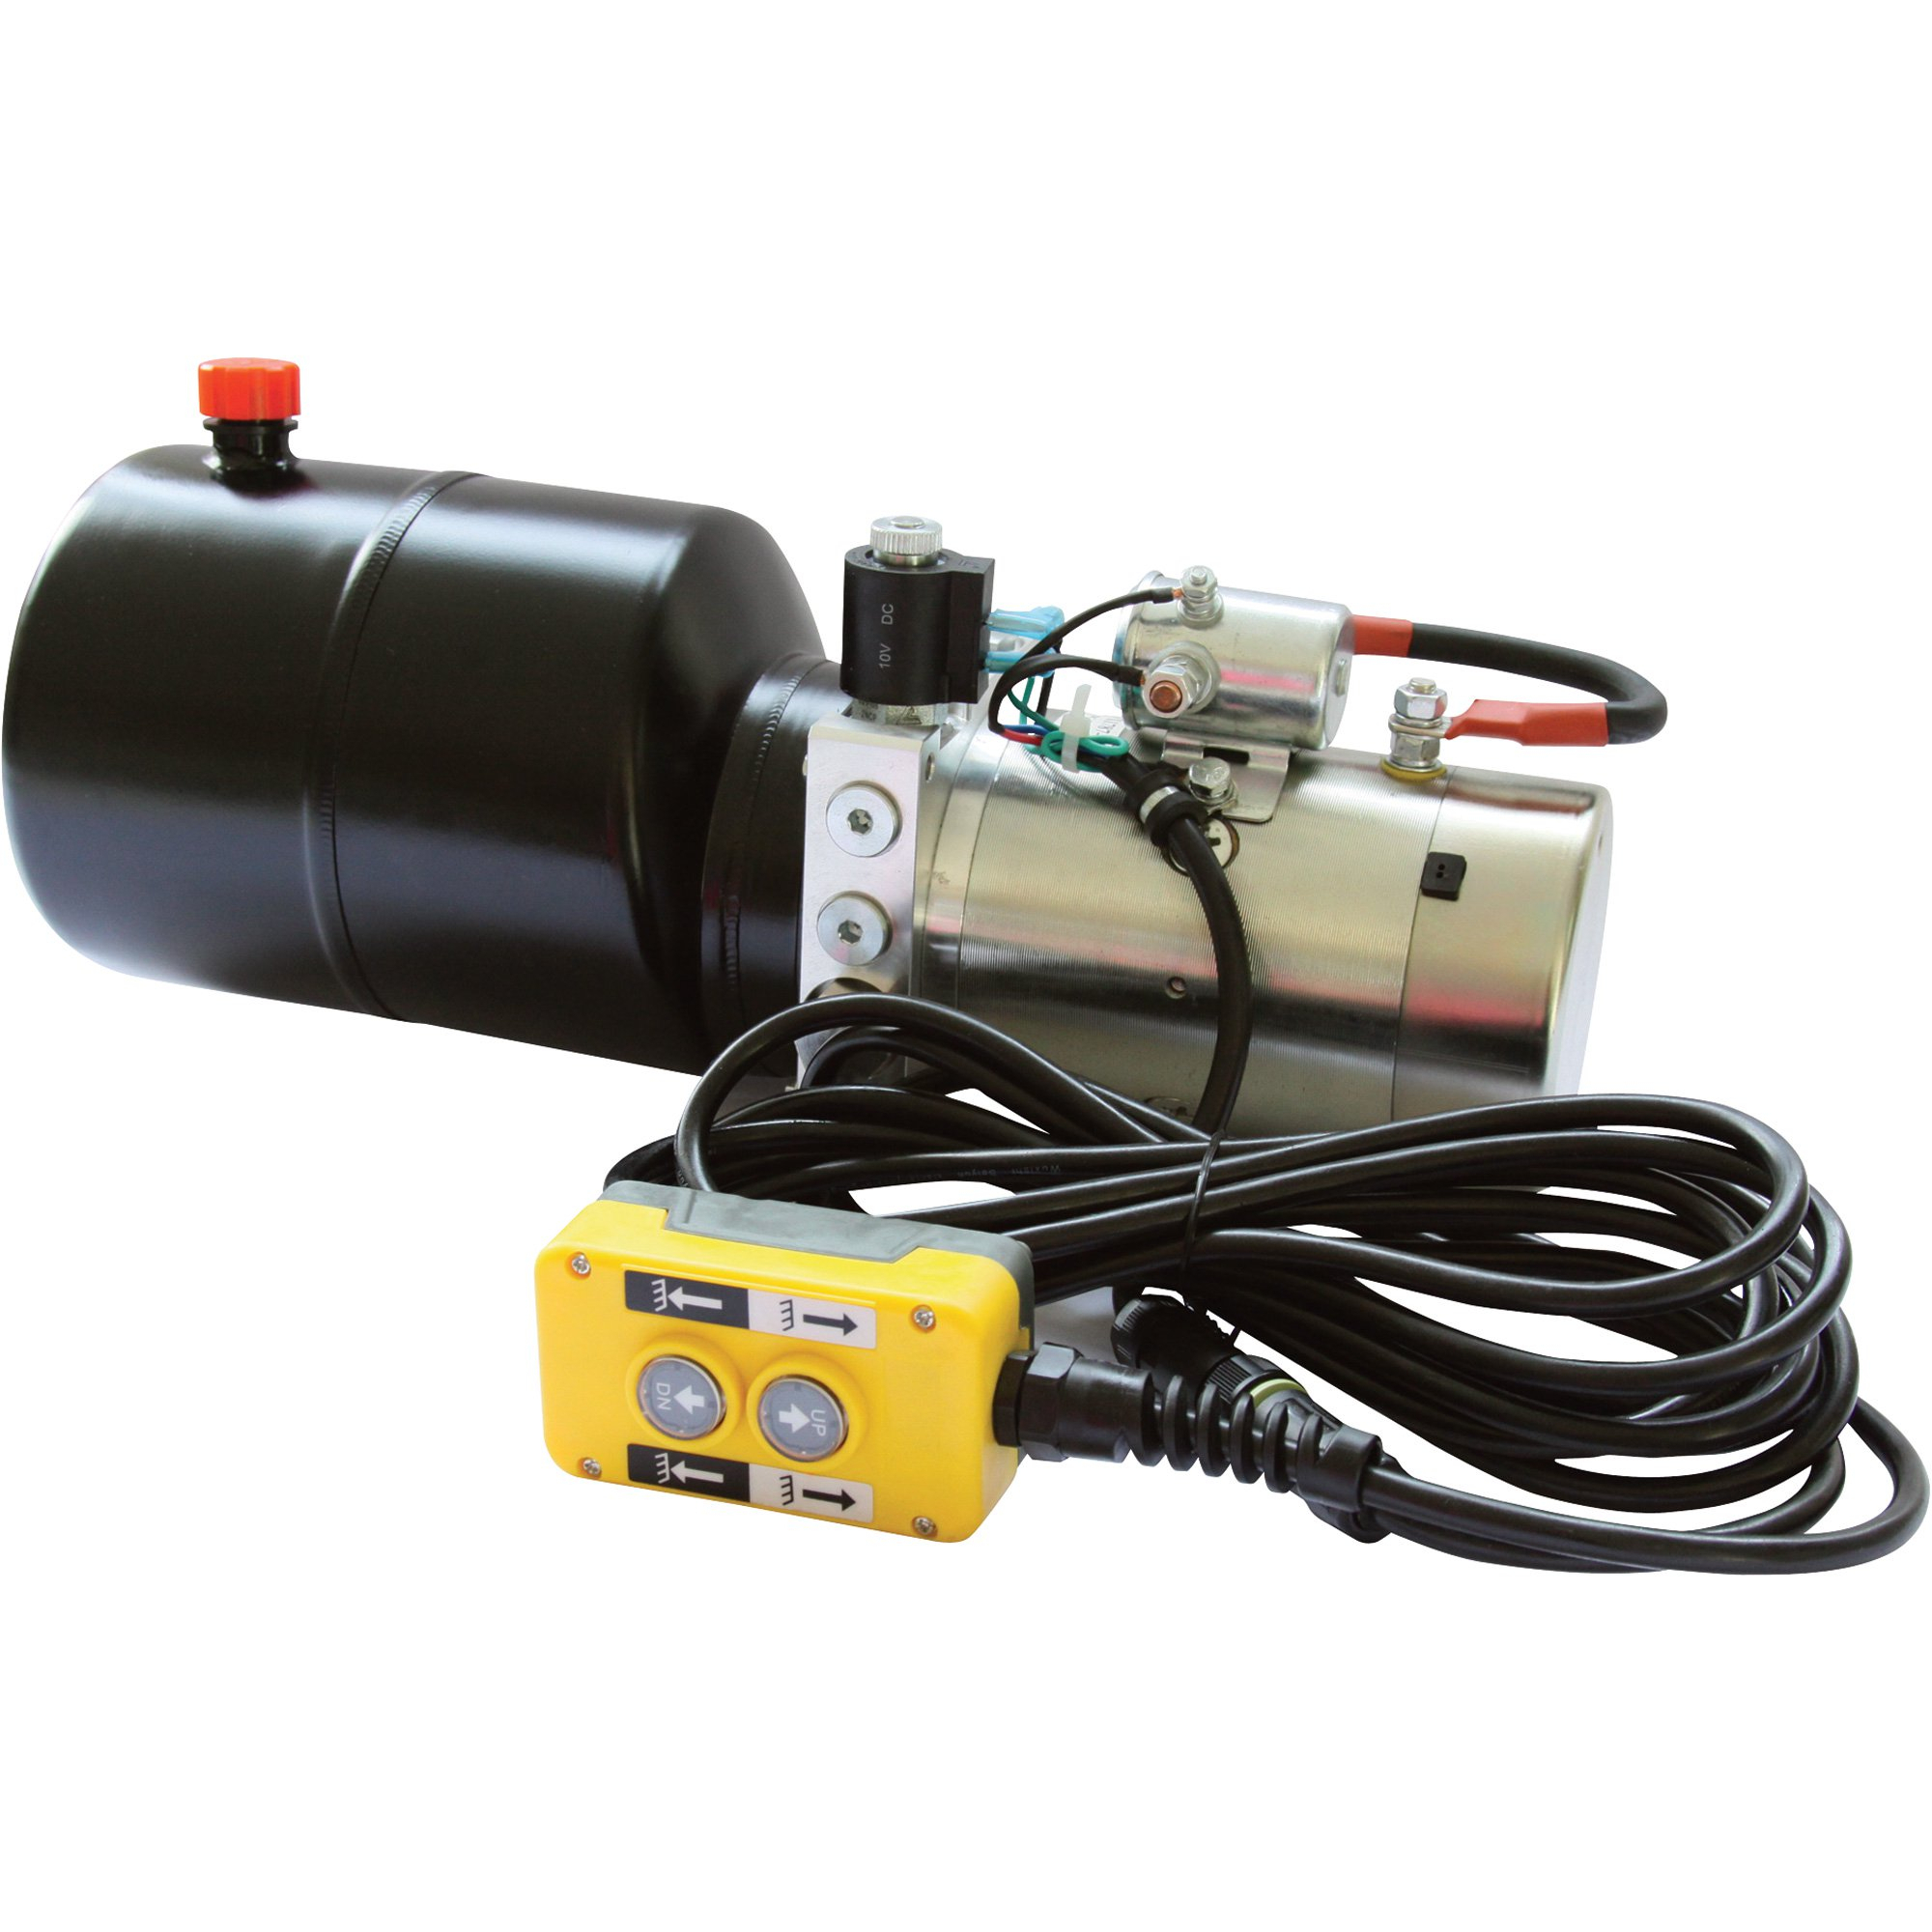 12 Volt Hydraulic Pump Wiring Diagram Wrg 1374 Hydraulic Power Pack Wiring Diagram